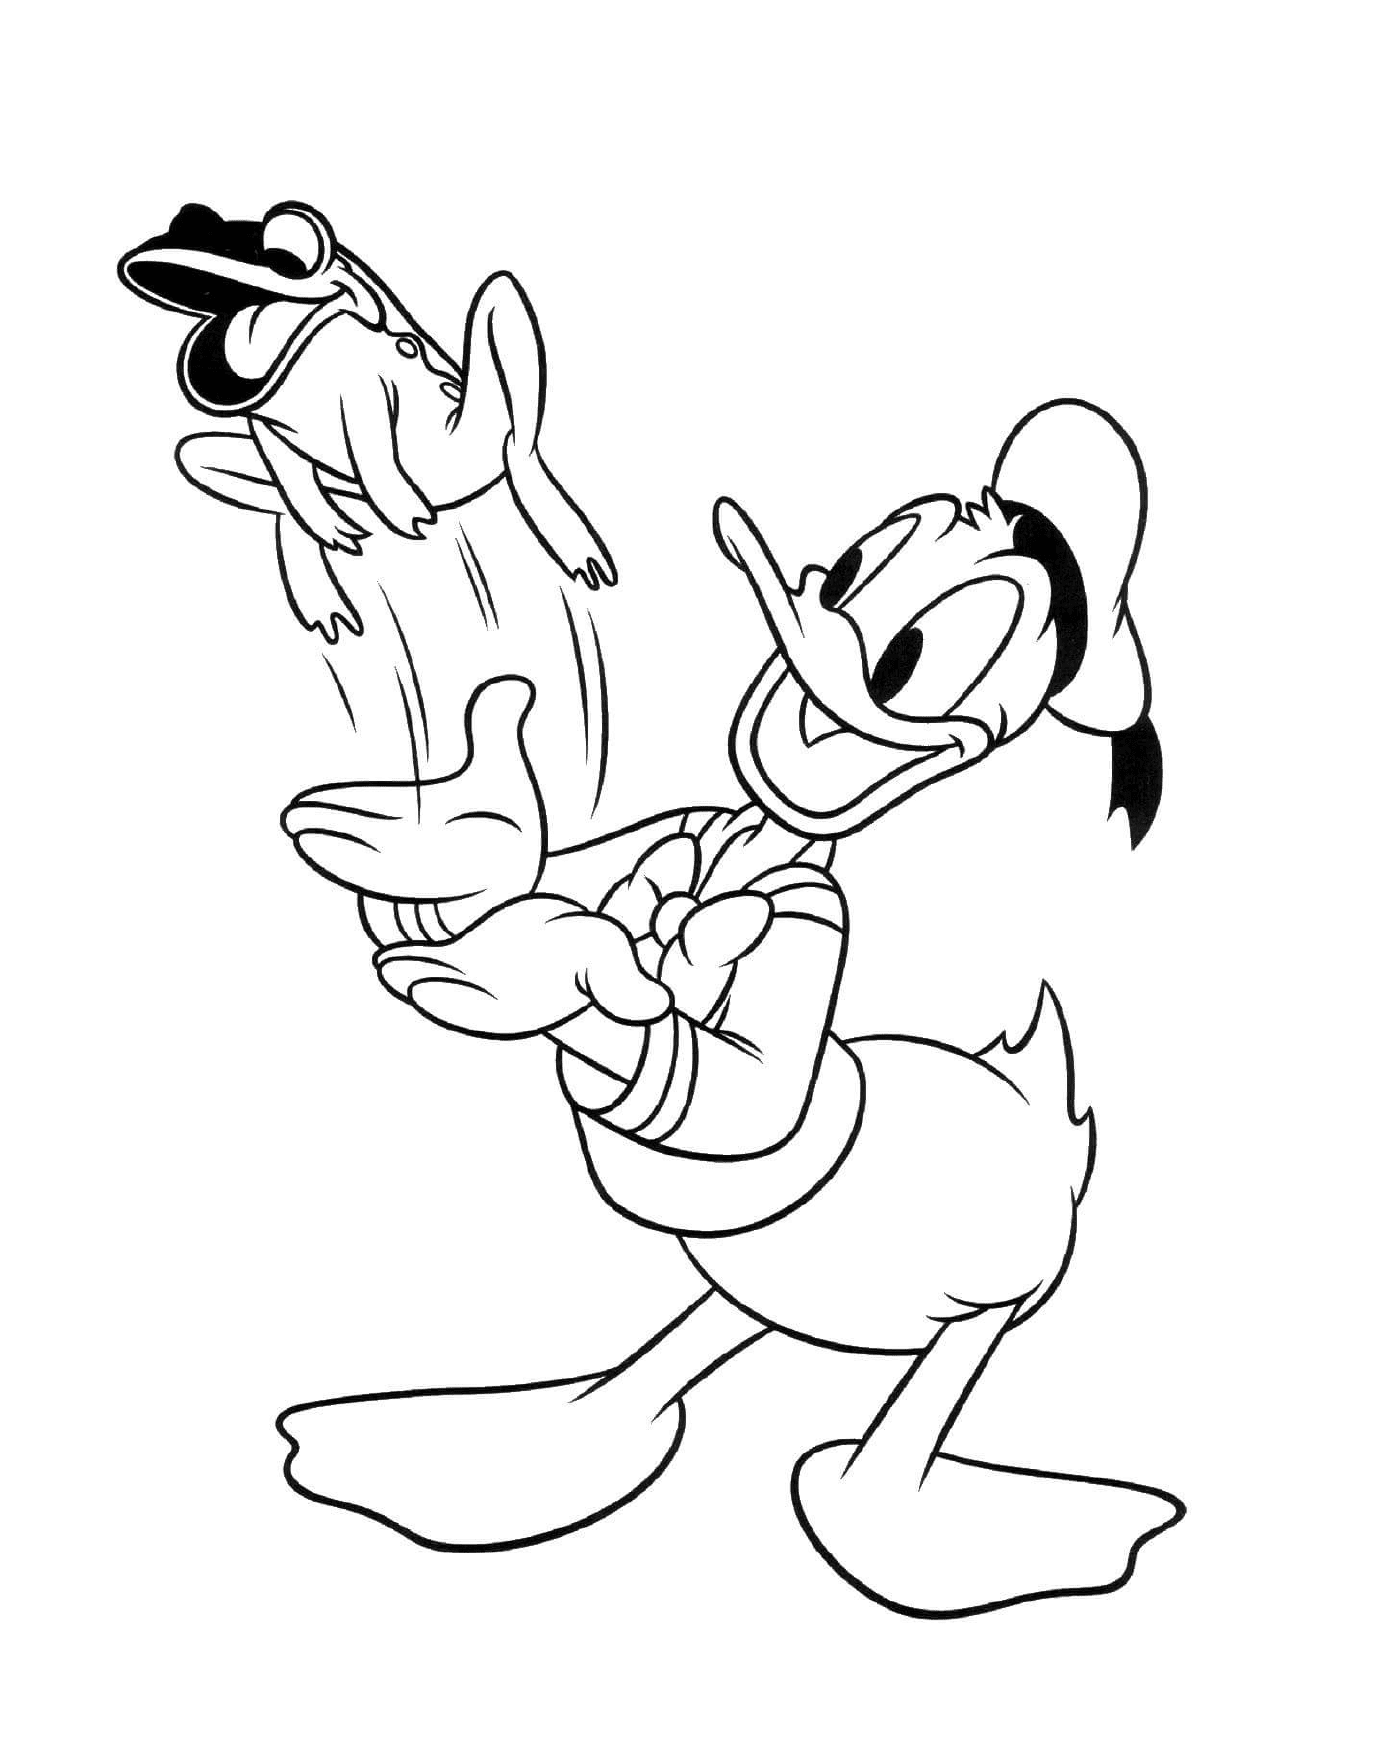   Donald Duck joue avec un chien 